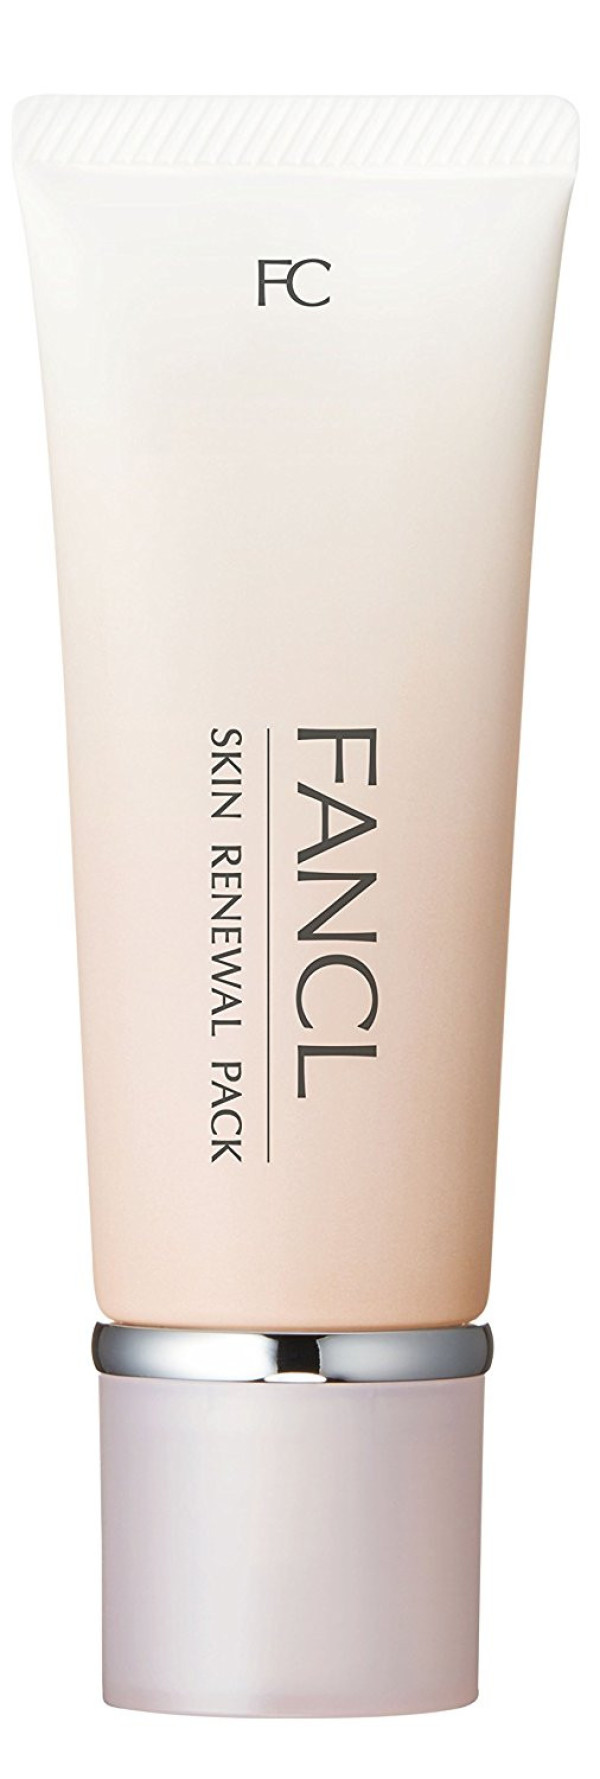 Маска для восстановления и обновления кожи лица Fancl Skin Renewal Pack FC              